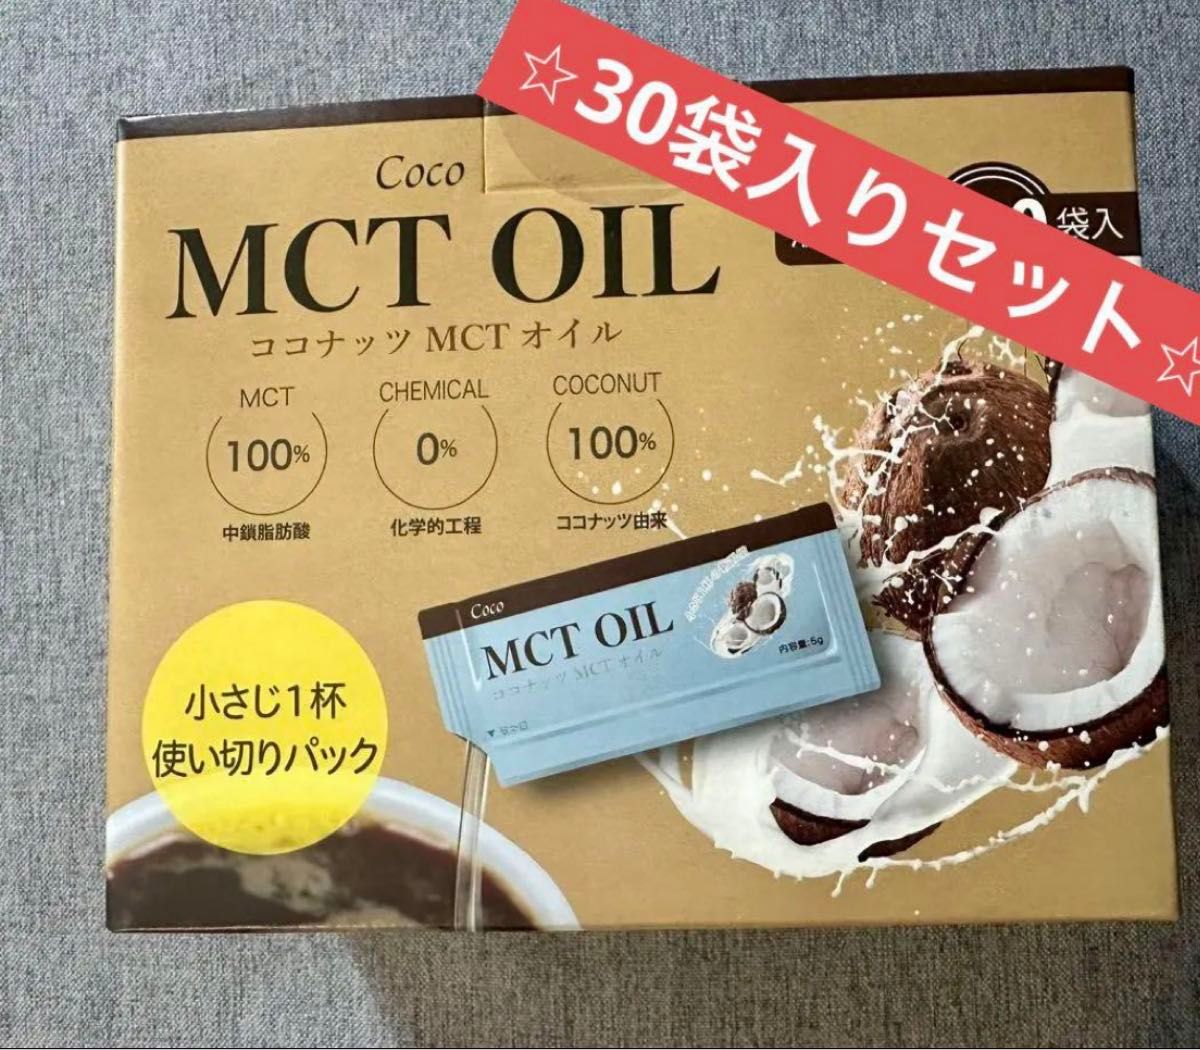 Coco MCT OIL ココナッツ MCT オイル 液体 5g 30袋入り